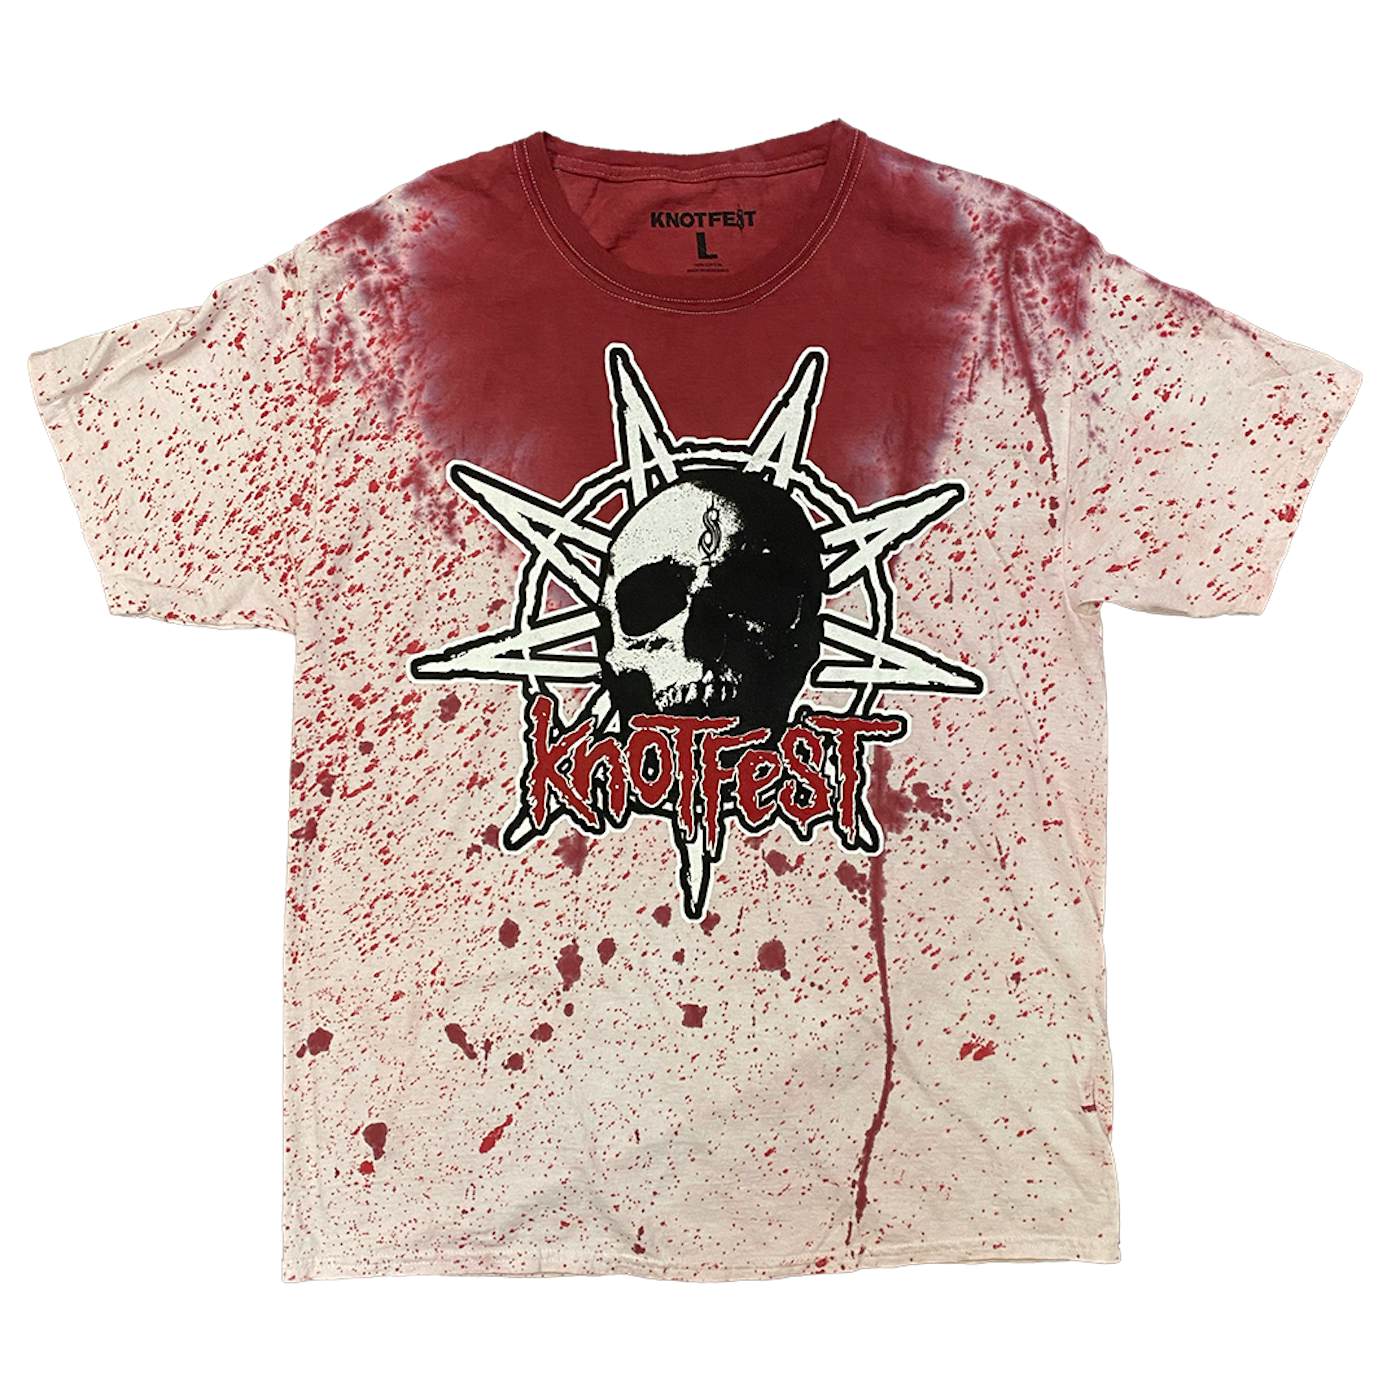 Slipknot Knotfest Leg 2 Star Skull Blood Splatter T-Shirt